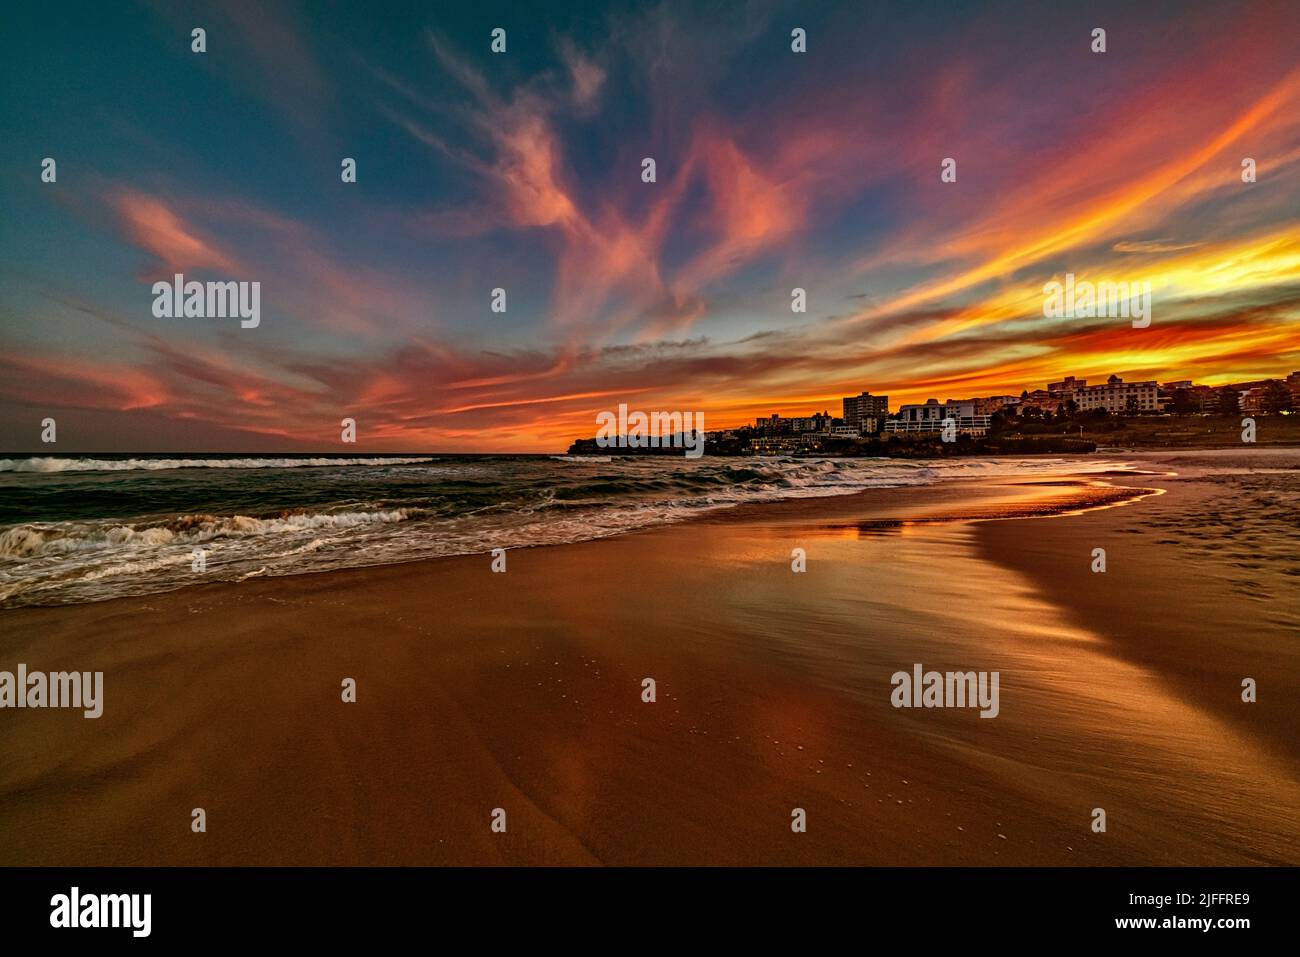 Un ciel magnifique et coloré tandis que le soleil se lève sur la célèbre plage de Bondi Beach à Sydney, en Australie. Regarder vers le sud sur le sable déserté est magique Banque D'Images